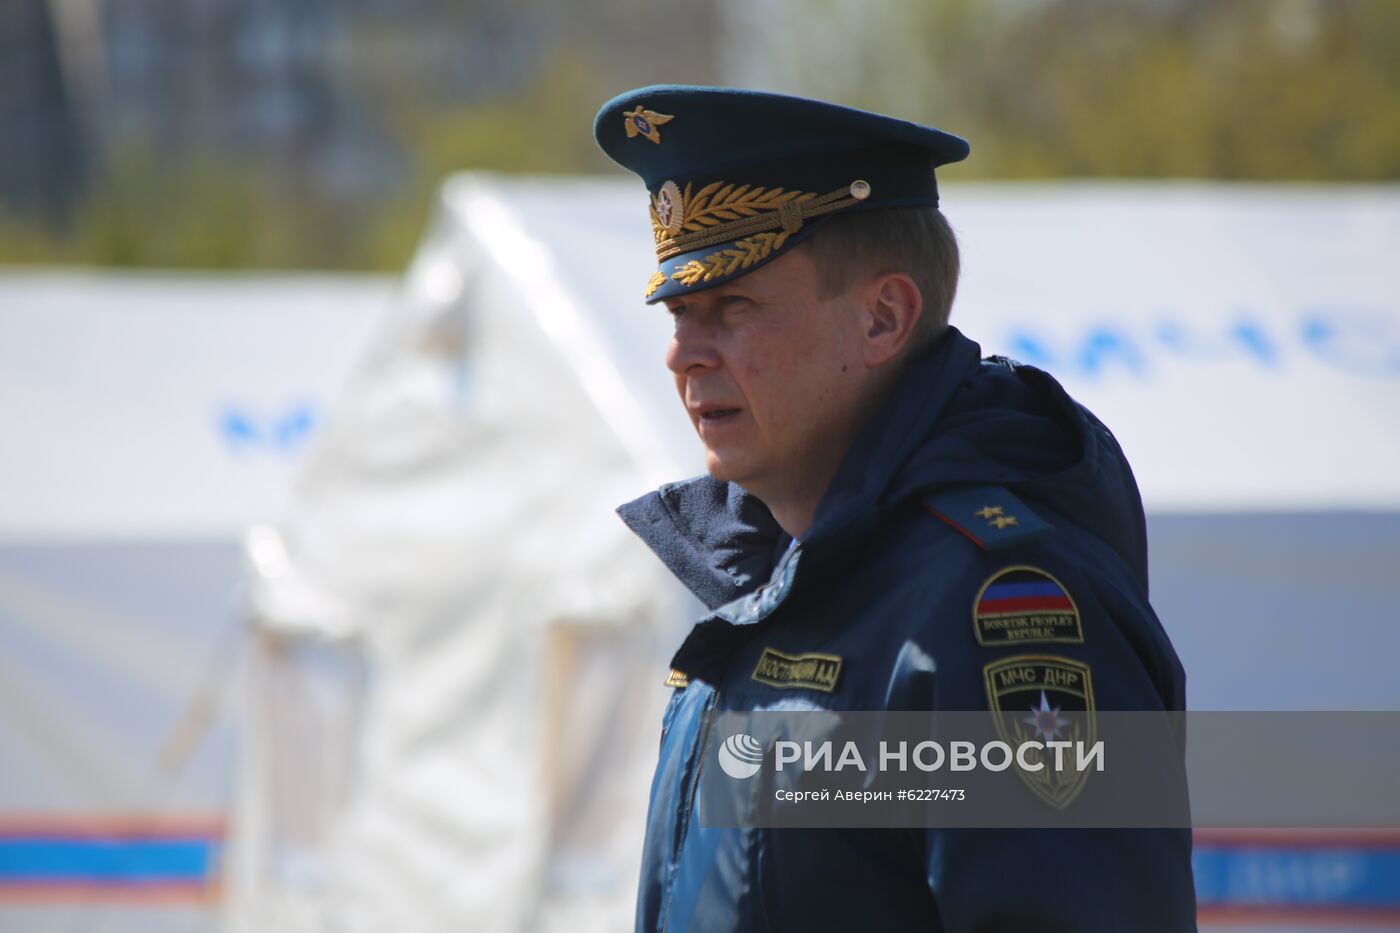 Учения МЧС в Донецке по развертыванию полевого медицинского лагеря